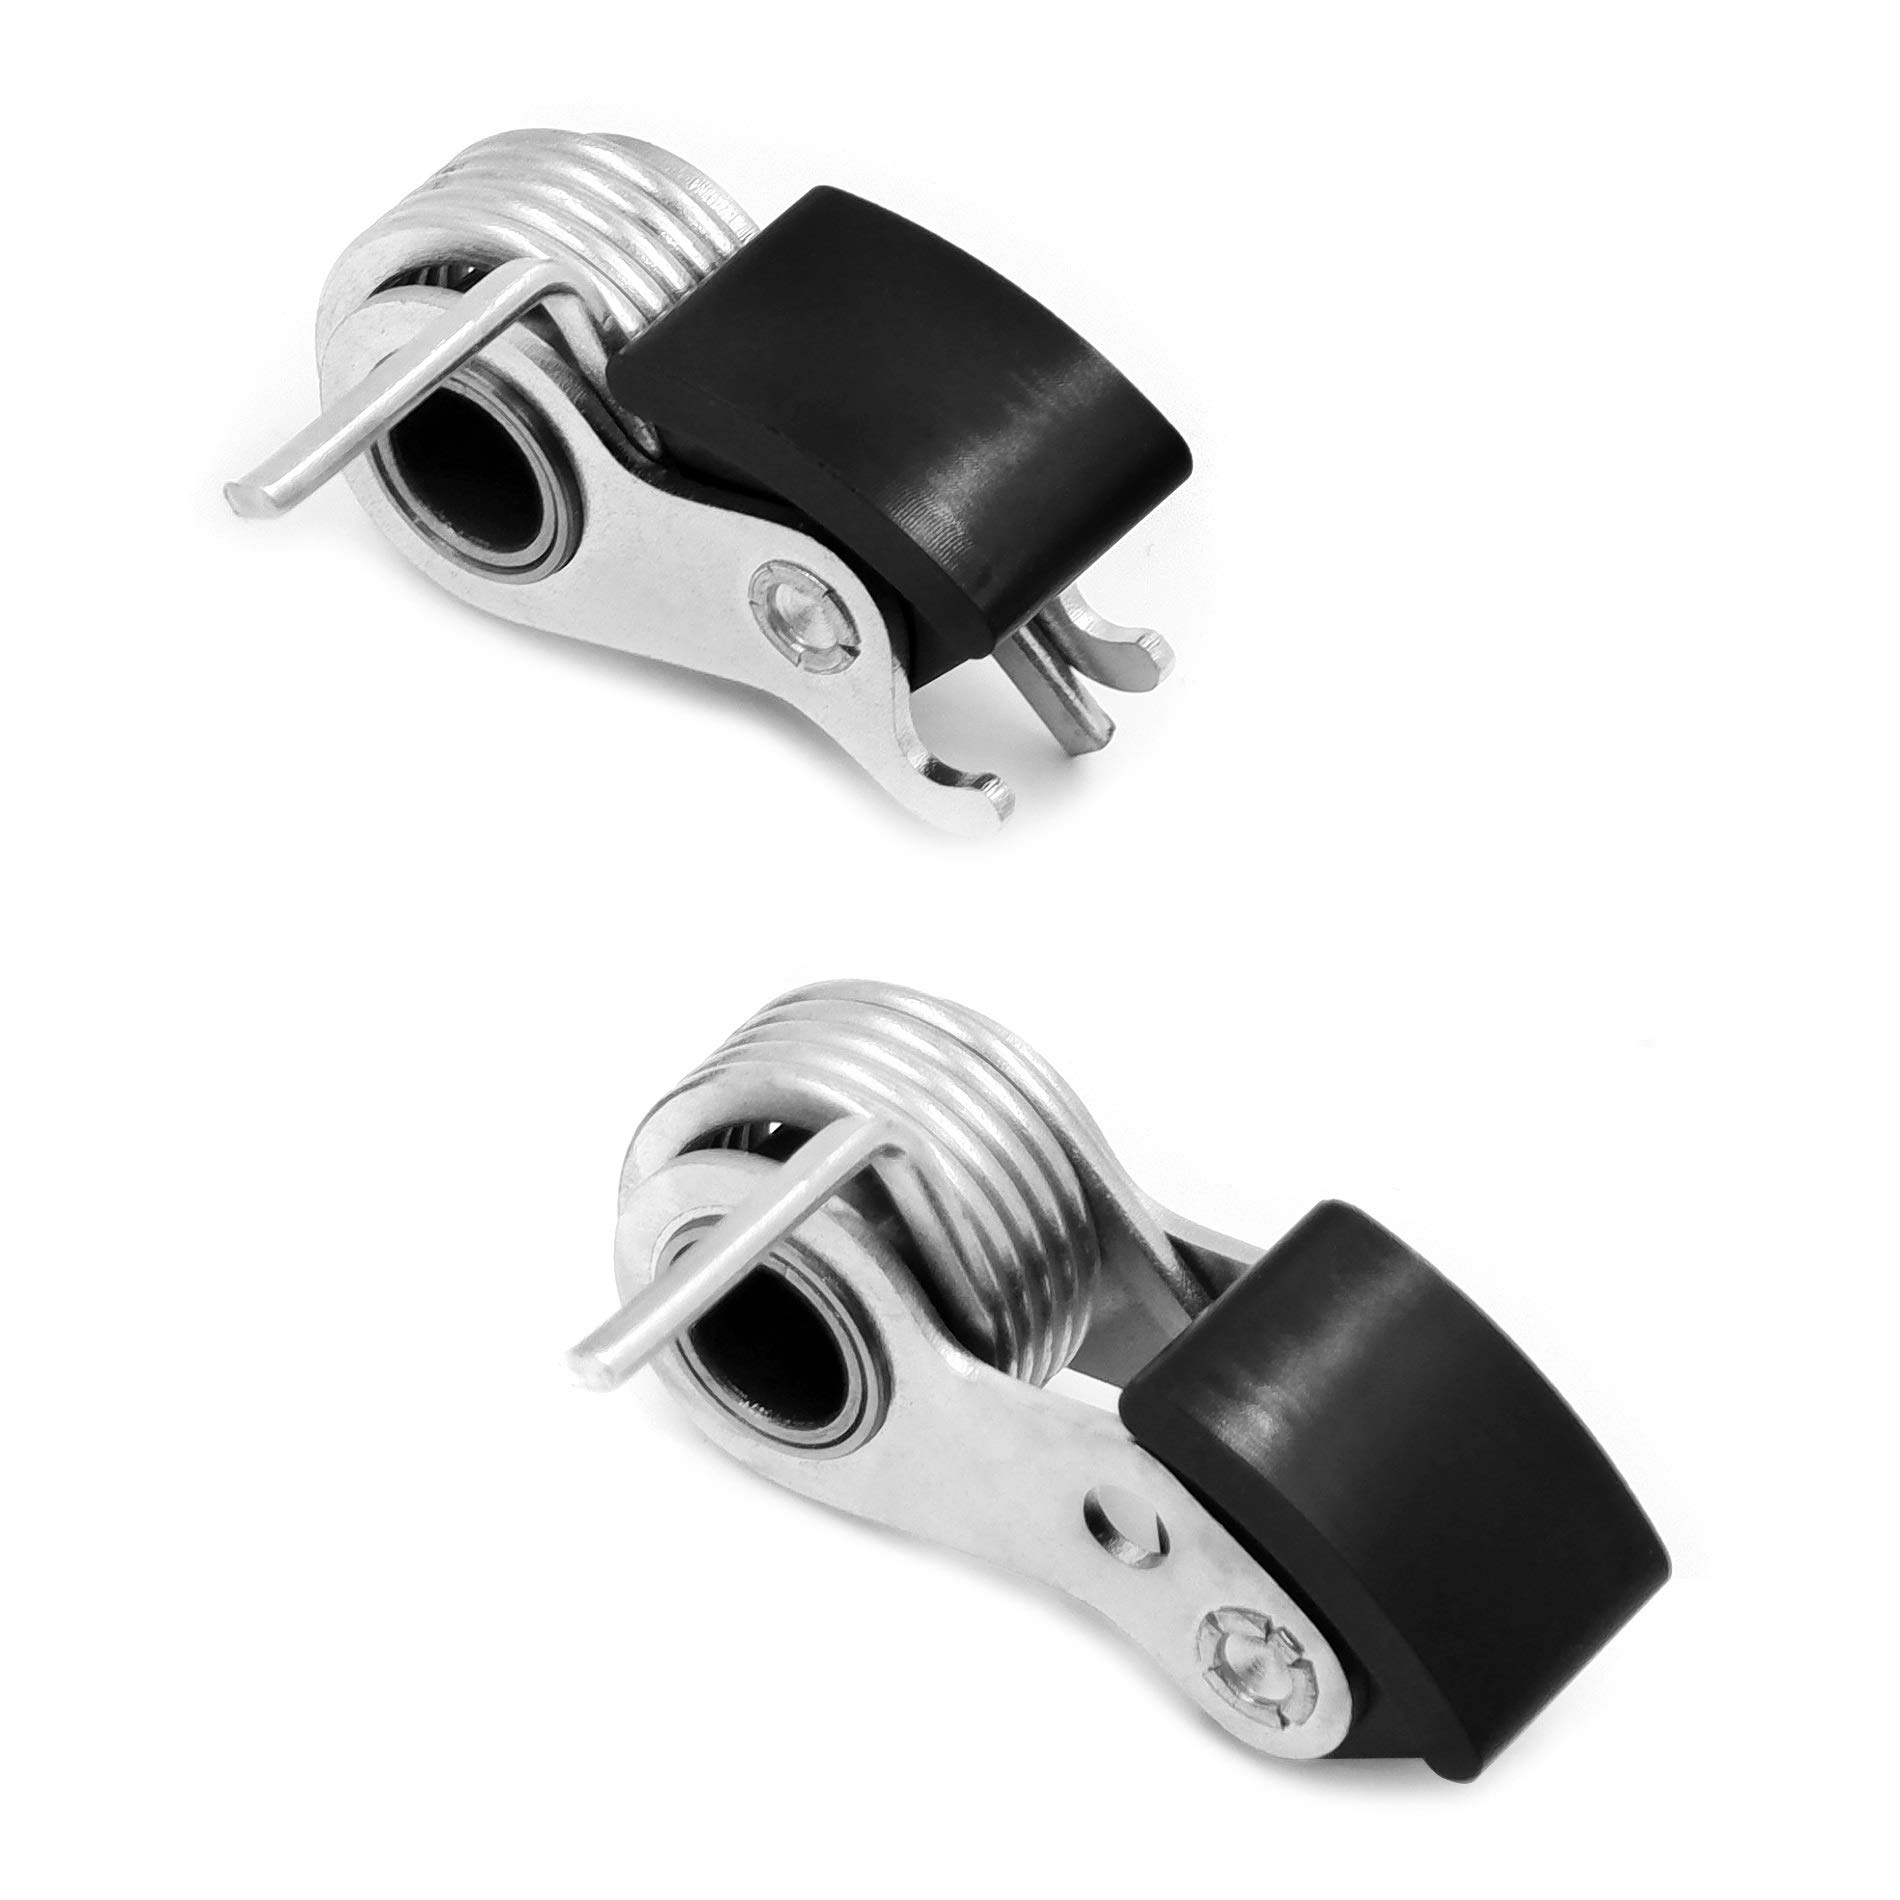 NBX-Kettenspanner-Set für Twin Cam 99-06 Harley 39954-99A 39964-99A von Xingmoto